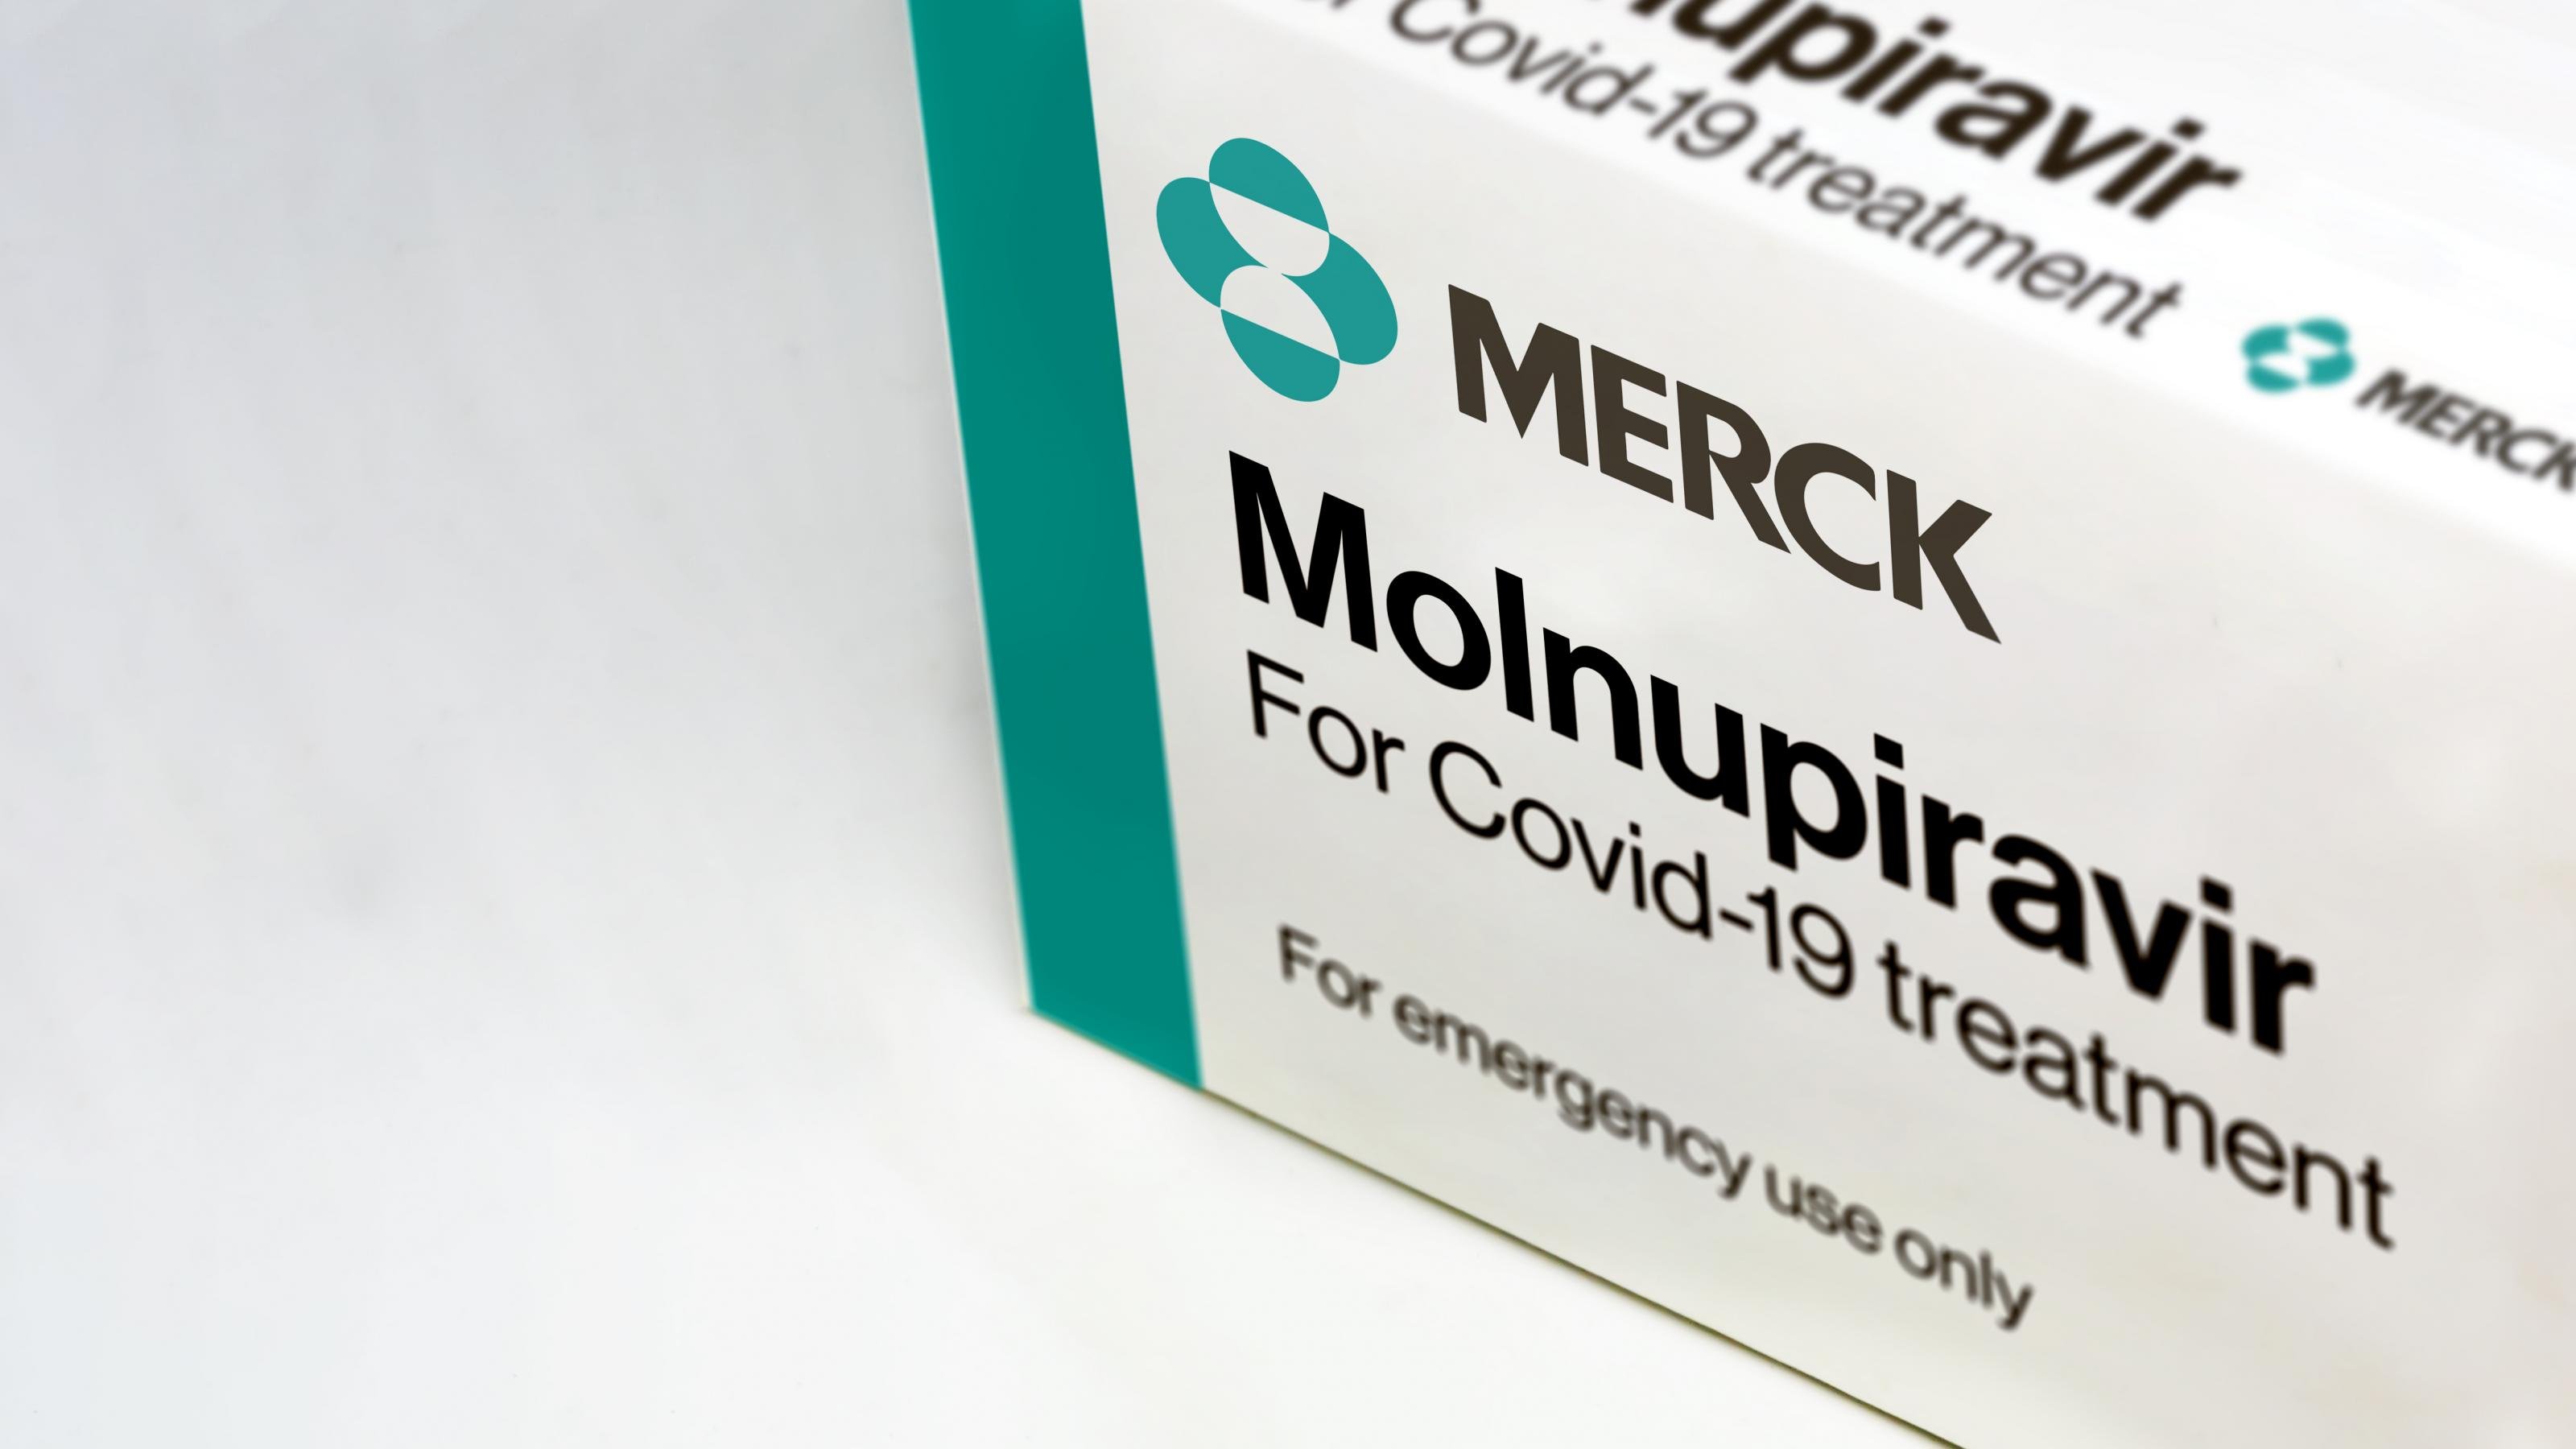 Auf einer weißen Arzneimittel-Schachtel steht Merck Molnupiravir for covid-19 treatment for emergency use only.